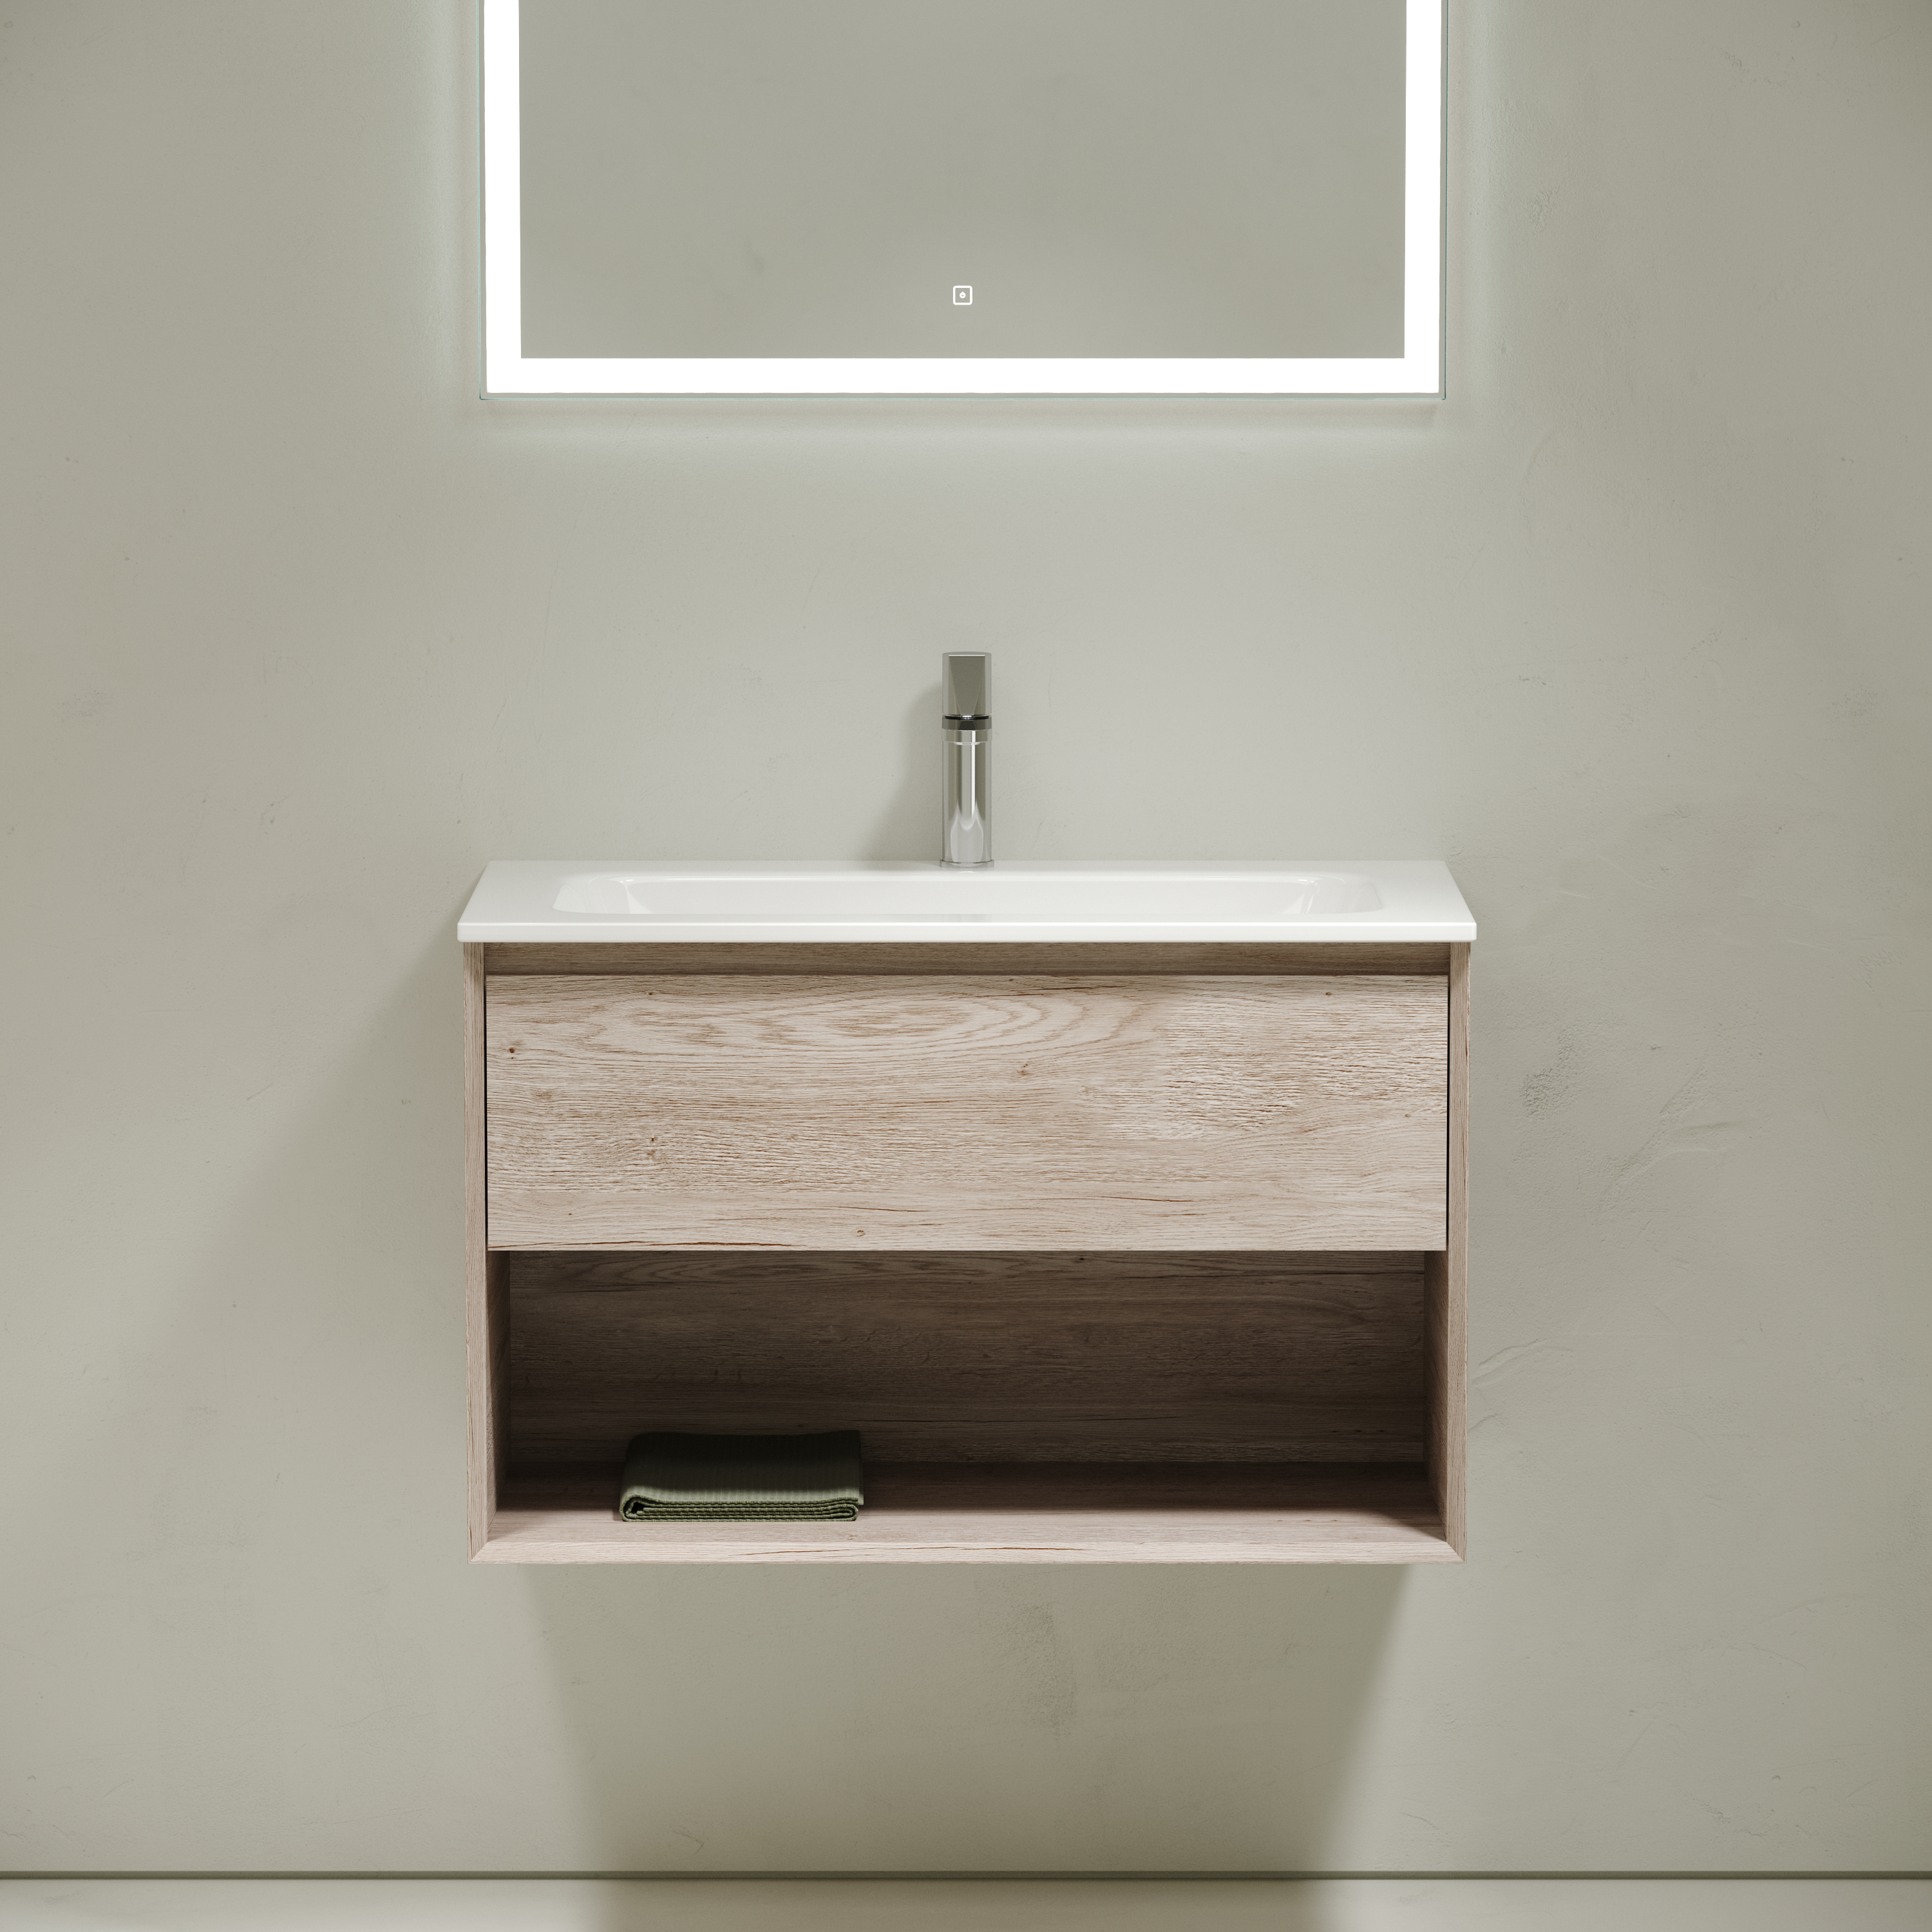 Мебель для ванной комнаты Sancos Marmi 1.0 80 см дуб галифакс натуральный, цвет коричневый MR1.080EG - фото 3